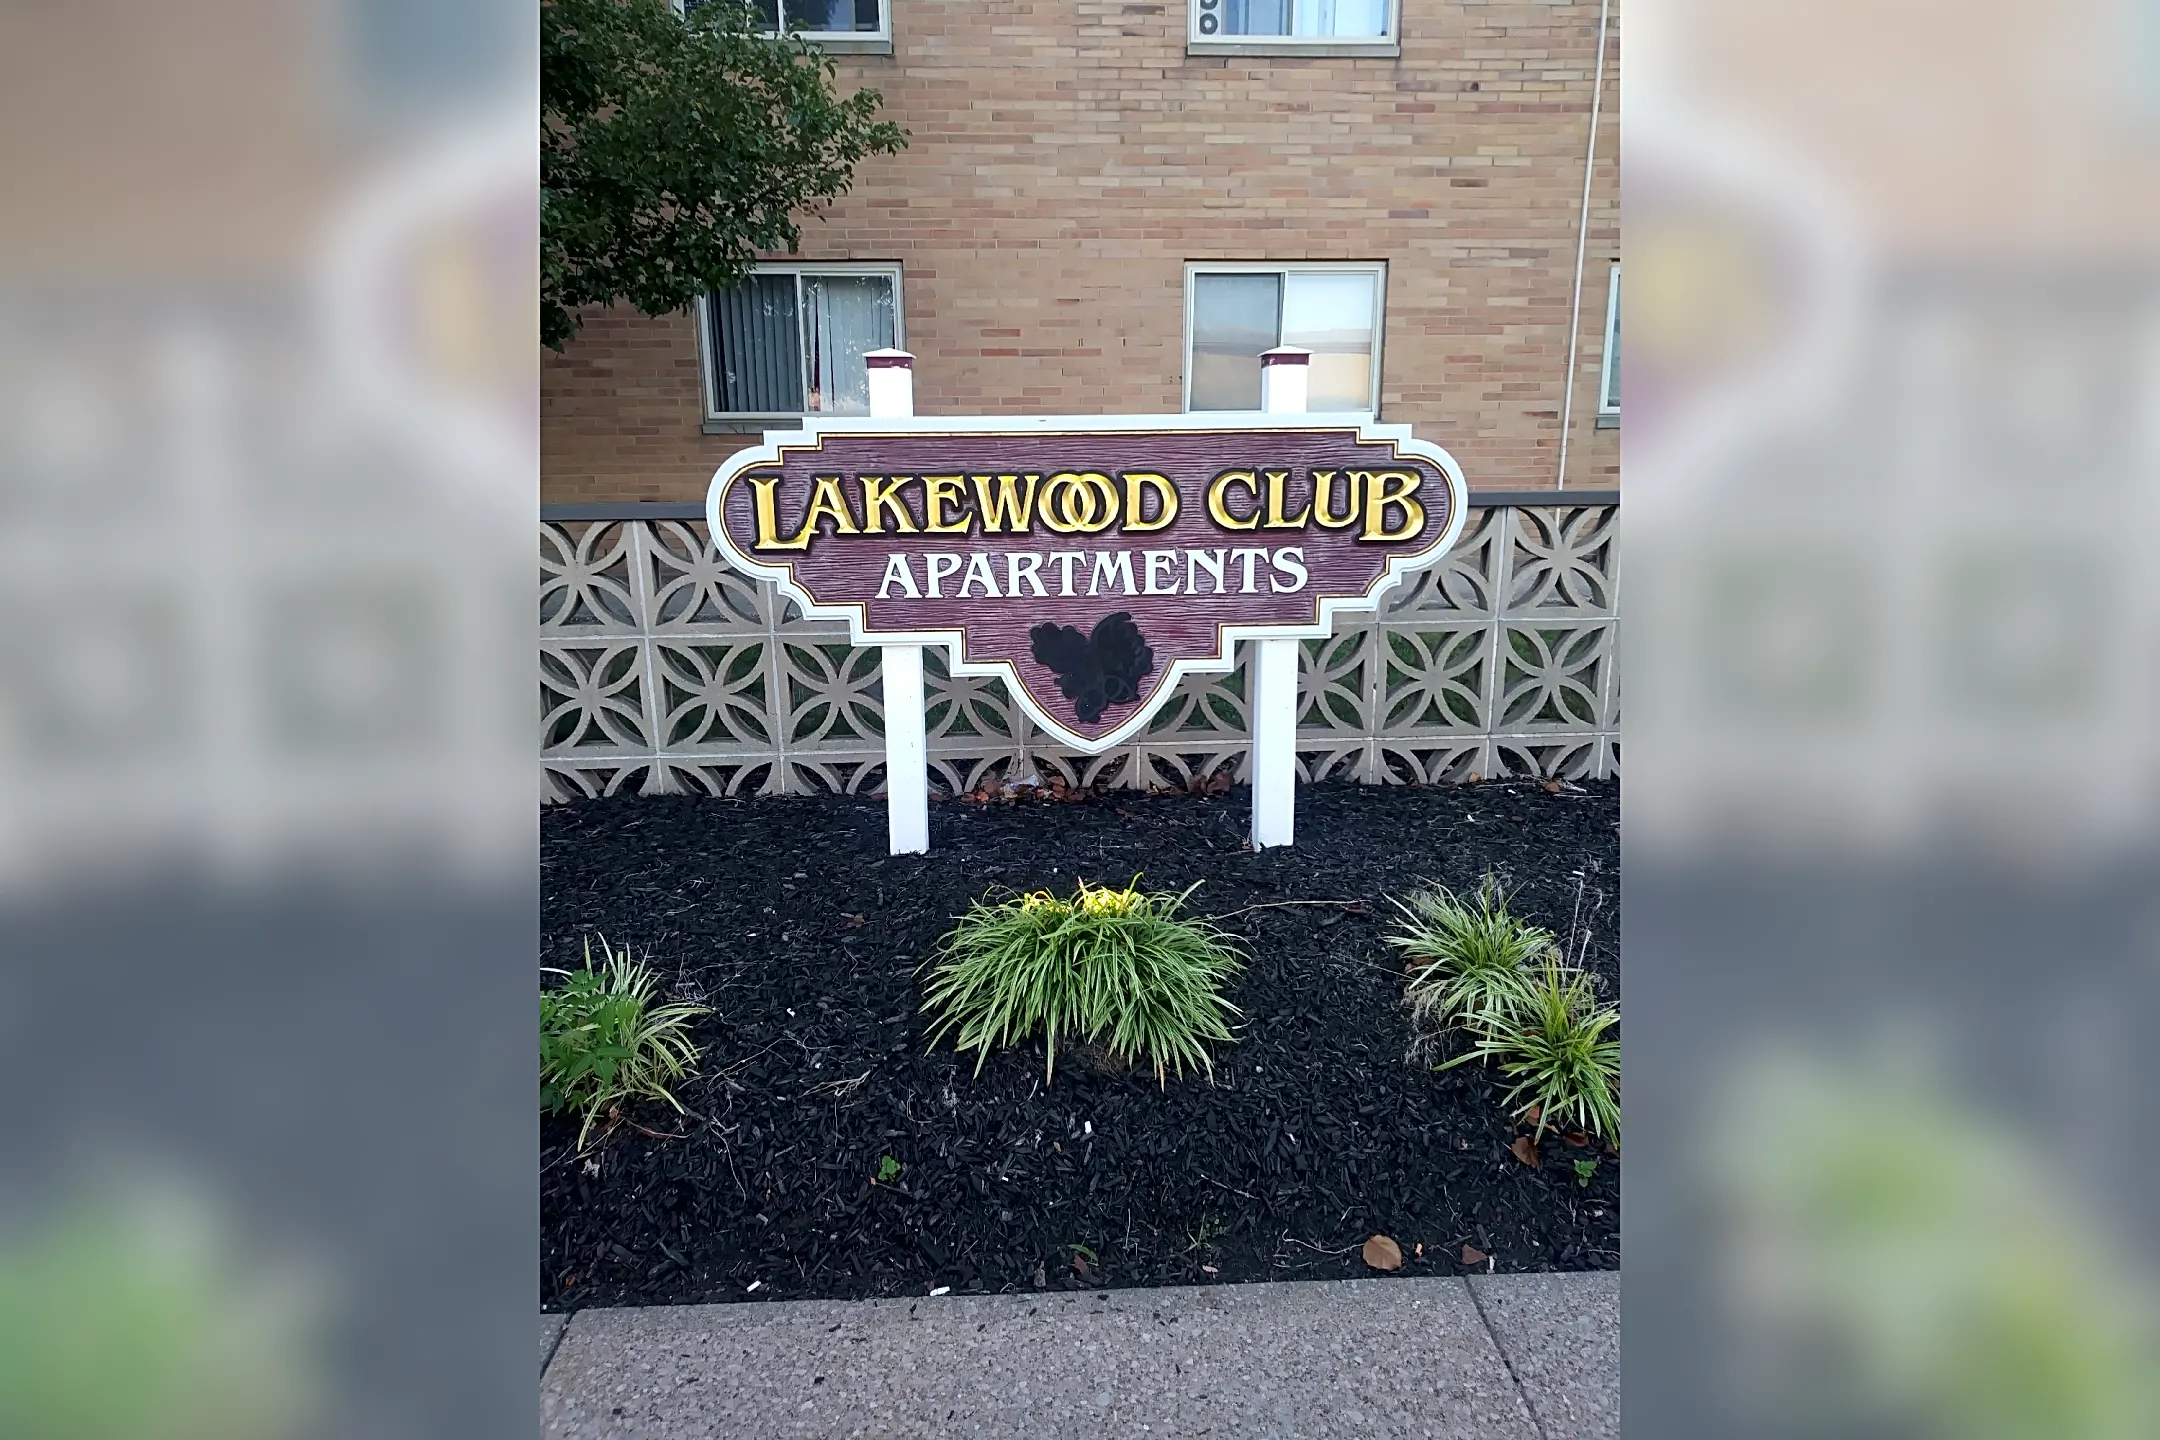 Pool - Lakewood Club - Lakewood, OH